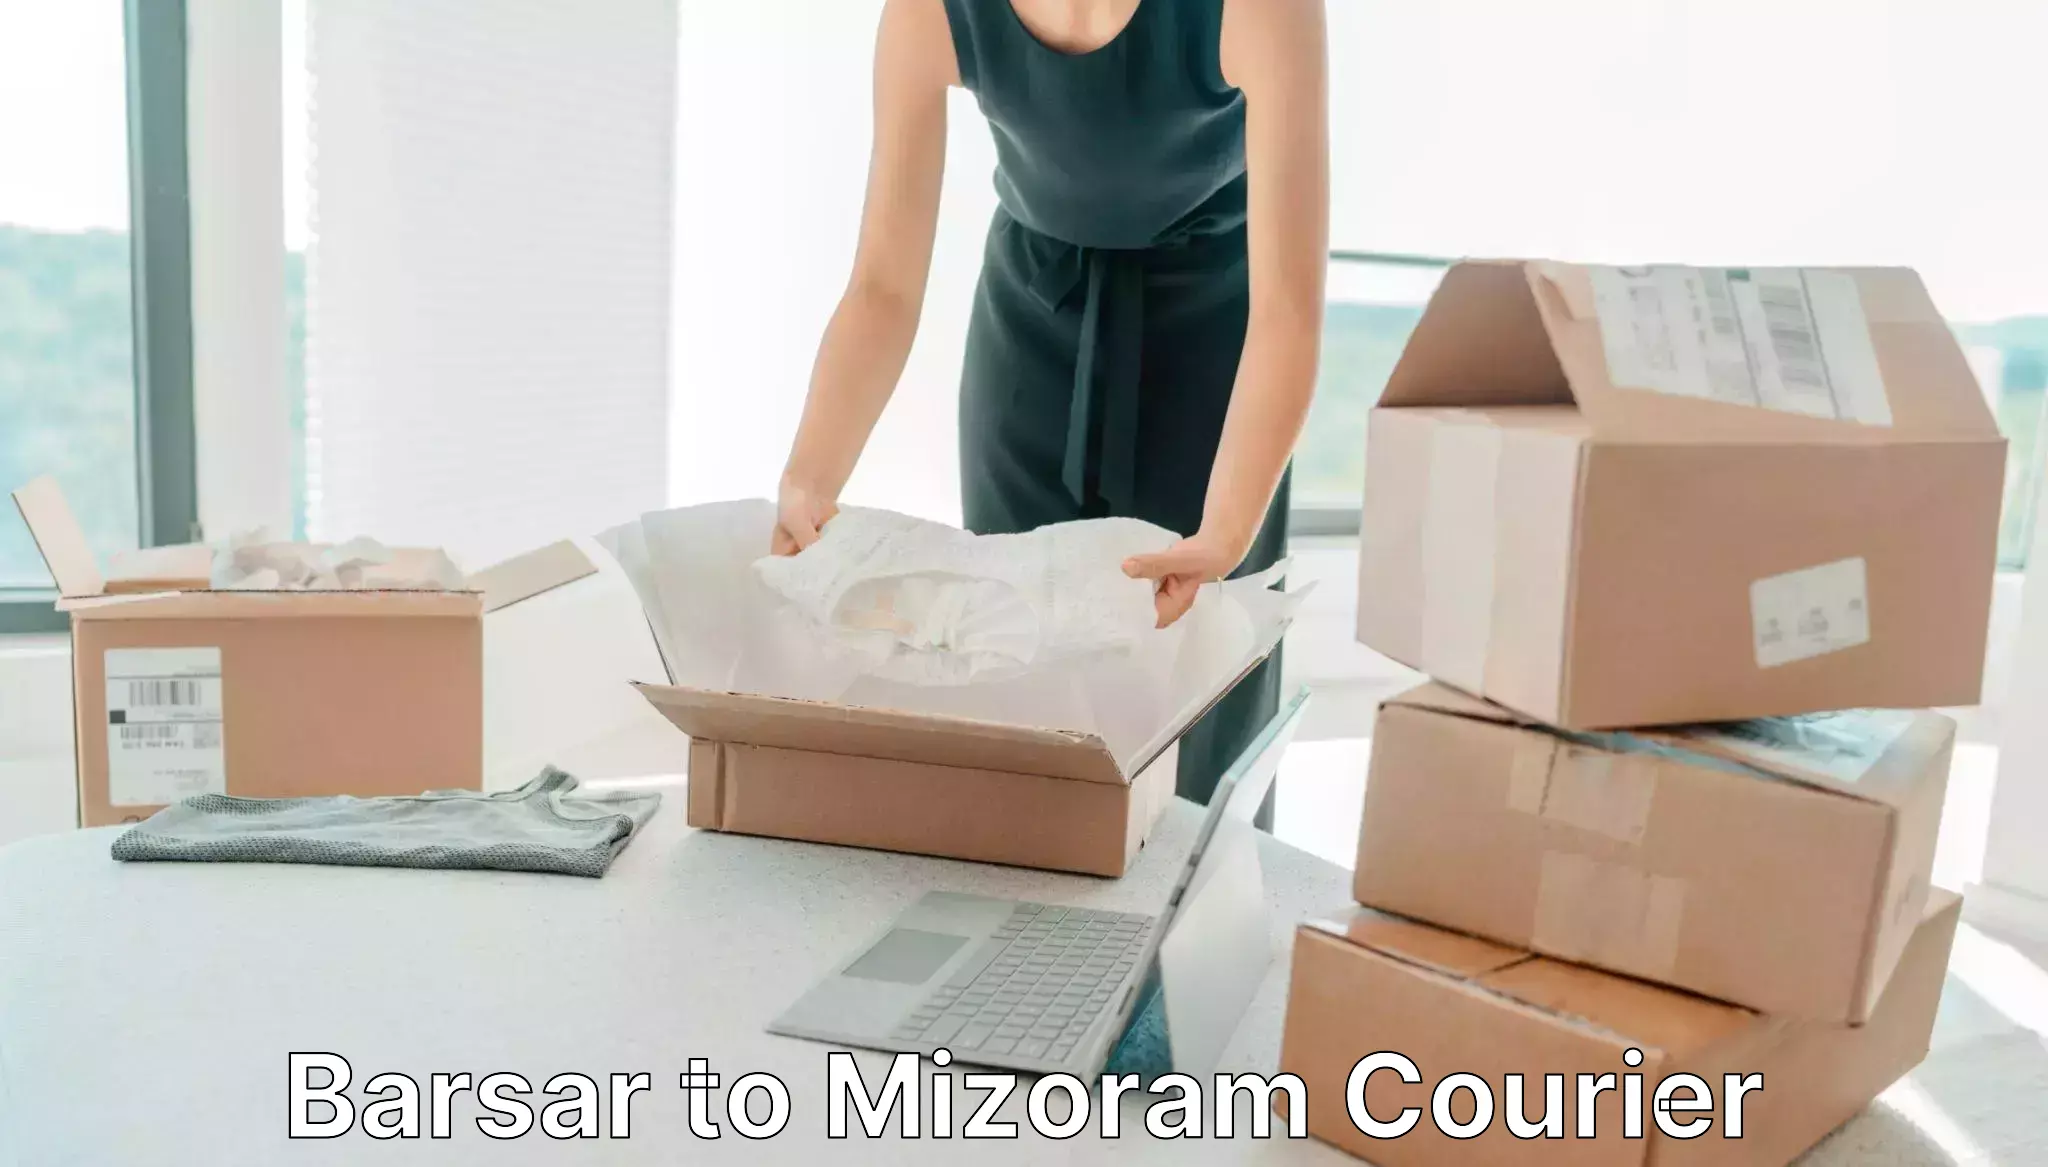 Courier service comparison Barsar to Mizoram